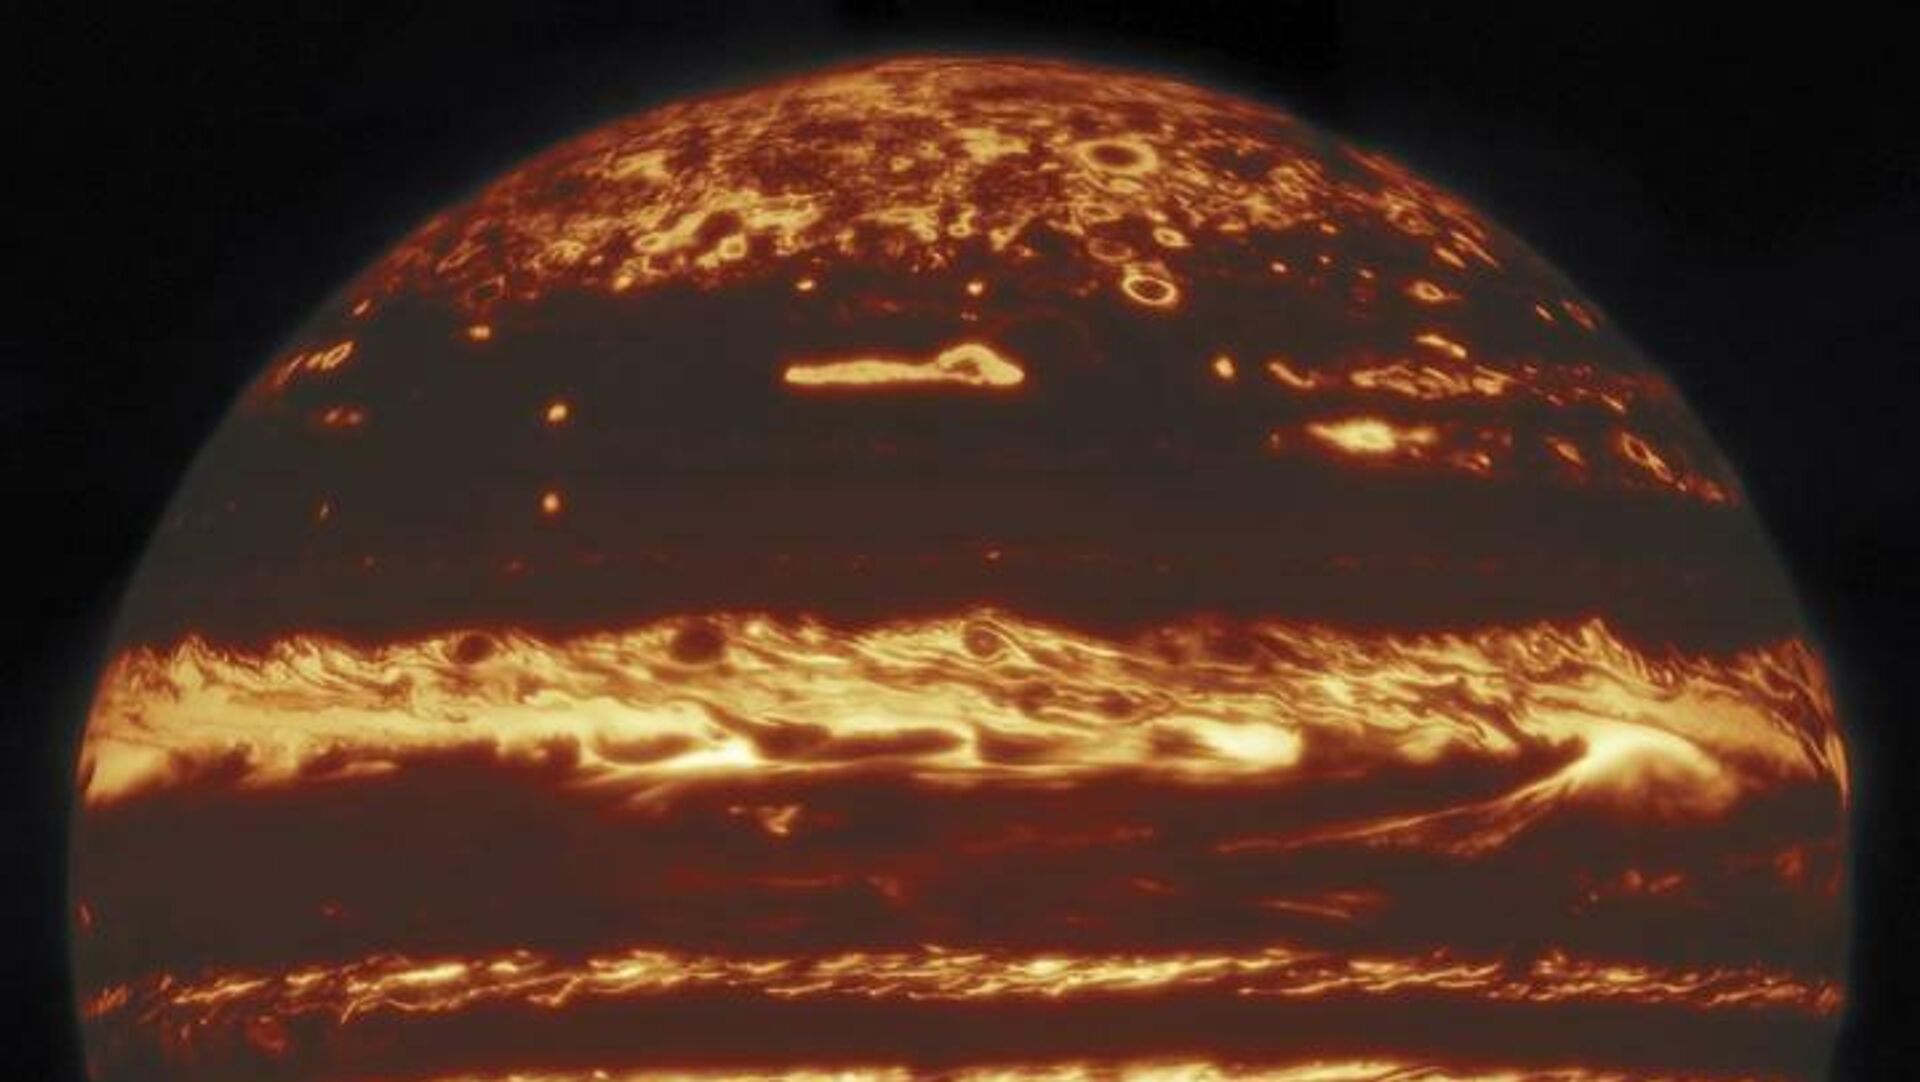 Изображение диска Юпитера в инфракрасном свете, составленное из снимков девяти отдельных наблюдательных сессий, проведенных обсерваторией Джемини 29 мая 2019 года - РИА Новости, 1920, 08.05.2020